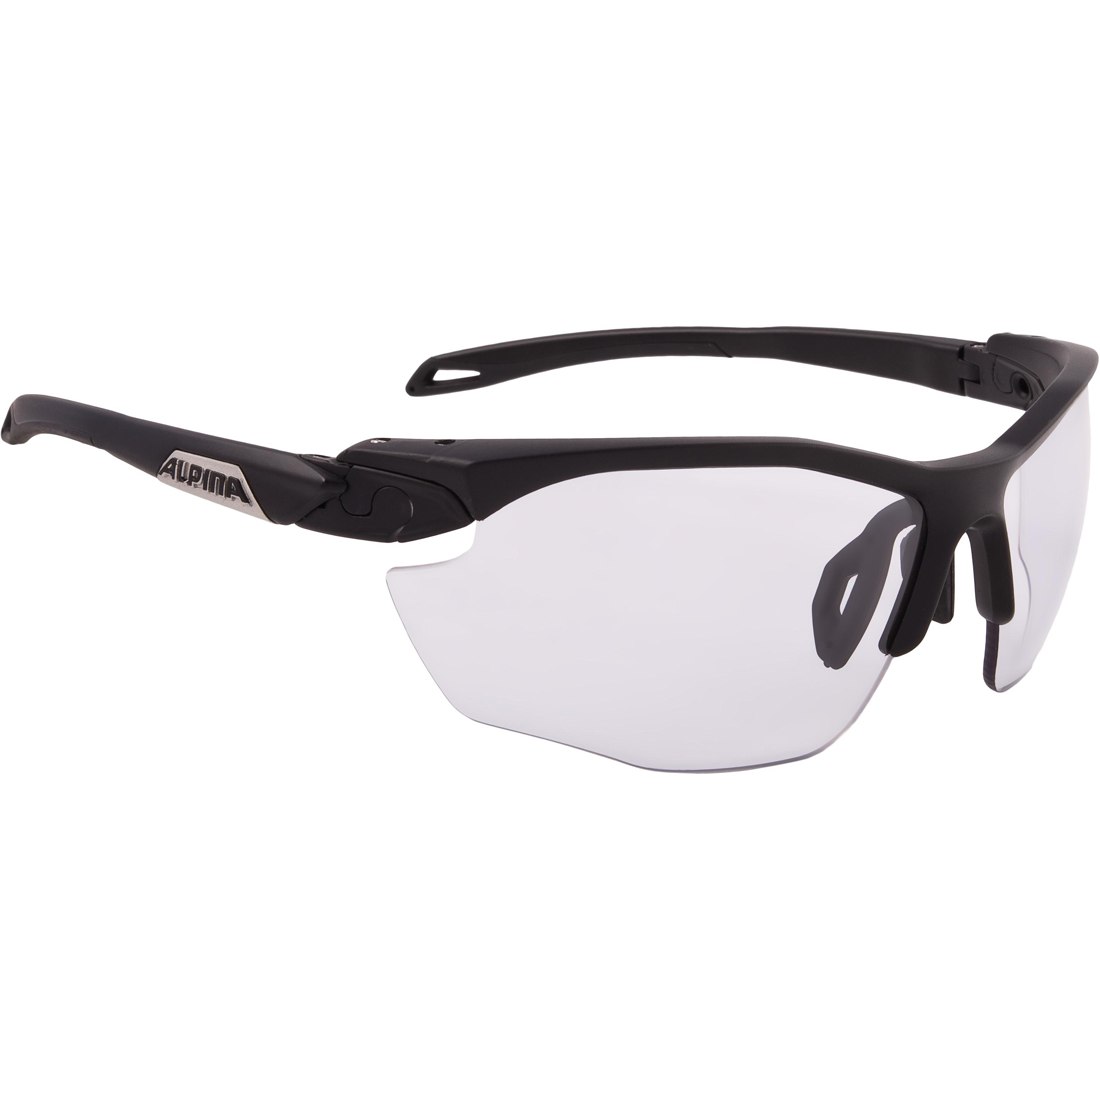 Productfoto van Alpina Twist Five HR V Glasses - black matt/Varioflex black